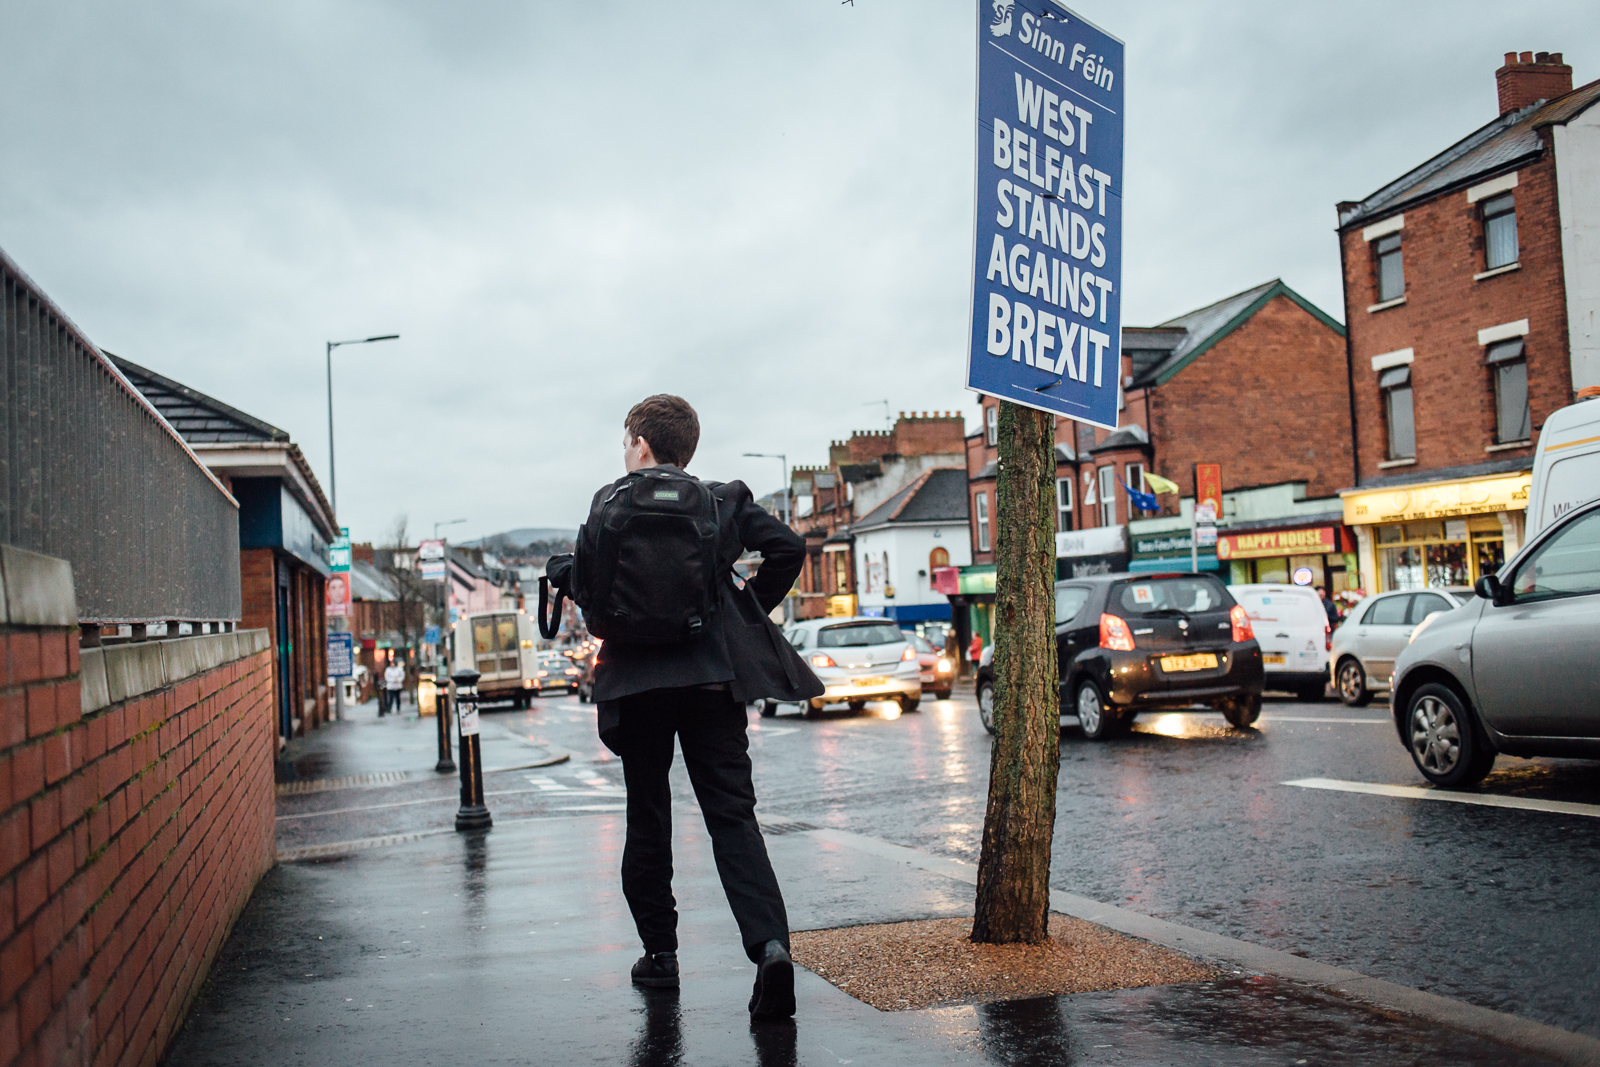 Belfast, le 24 février 2017. Falls road, la rue emblématique du quartier catholique / républicain. La prespective du Brexit inquiète toute l'Irlande du Nord, protestants loyalistes comme républicains catholiques .